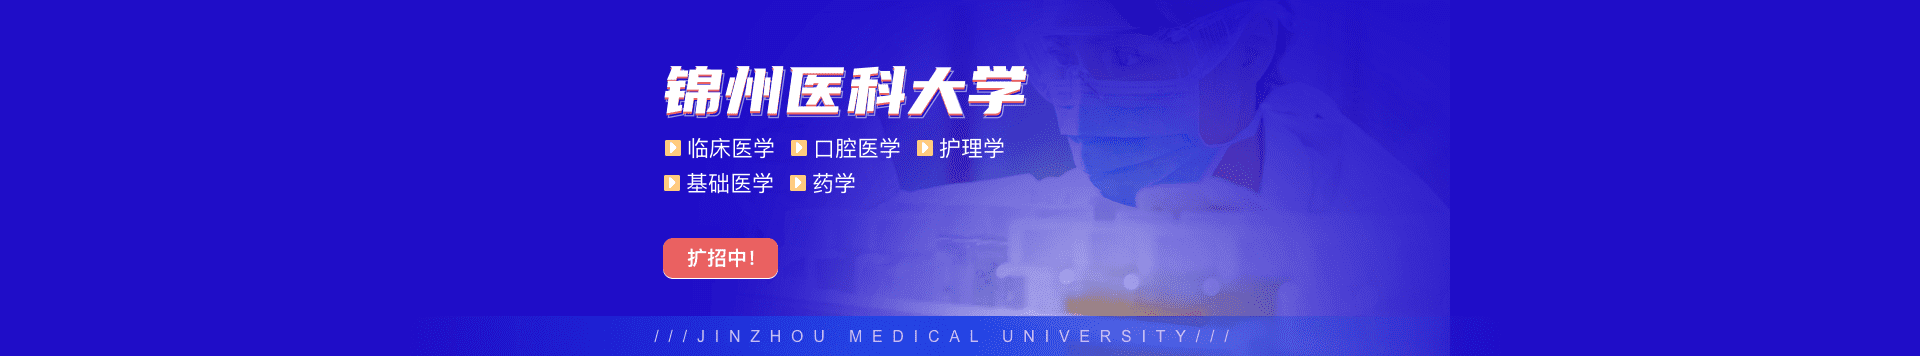 锦州医科大学